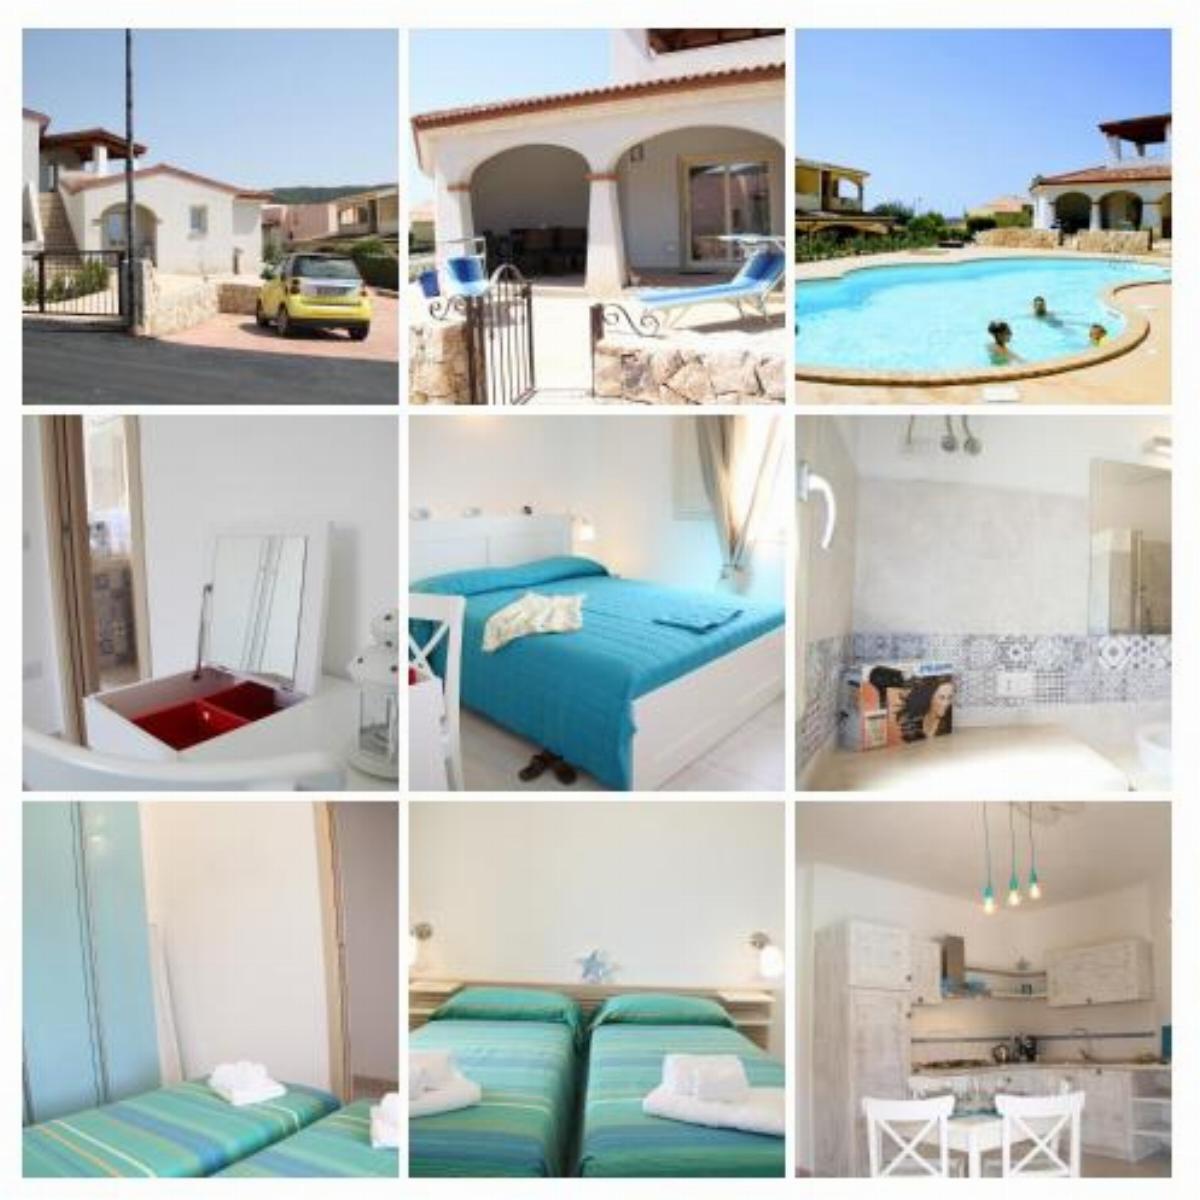 Turquoise & Wood Stylish House 23 Hotel Limpiddu Italy